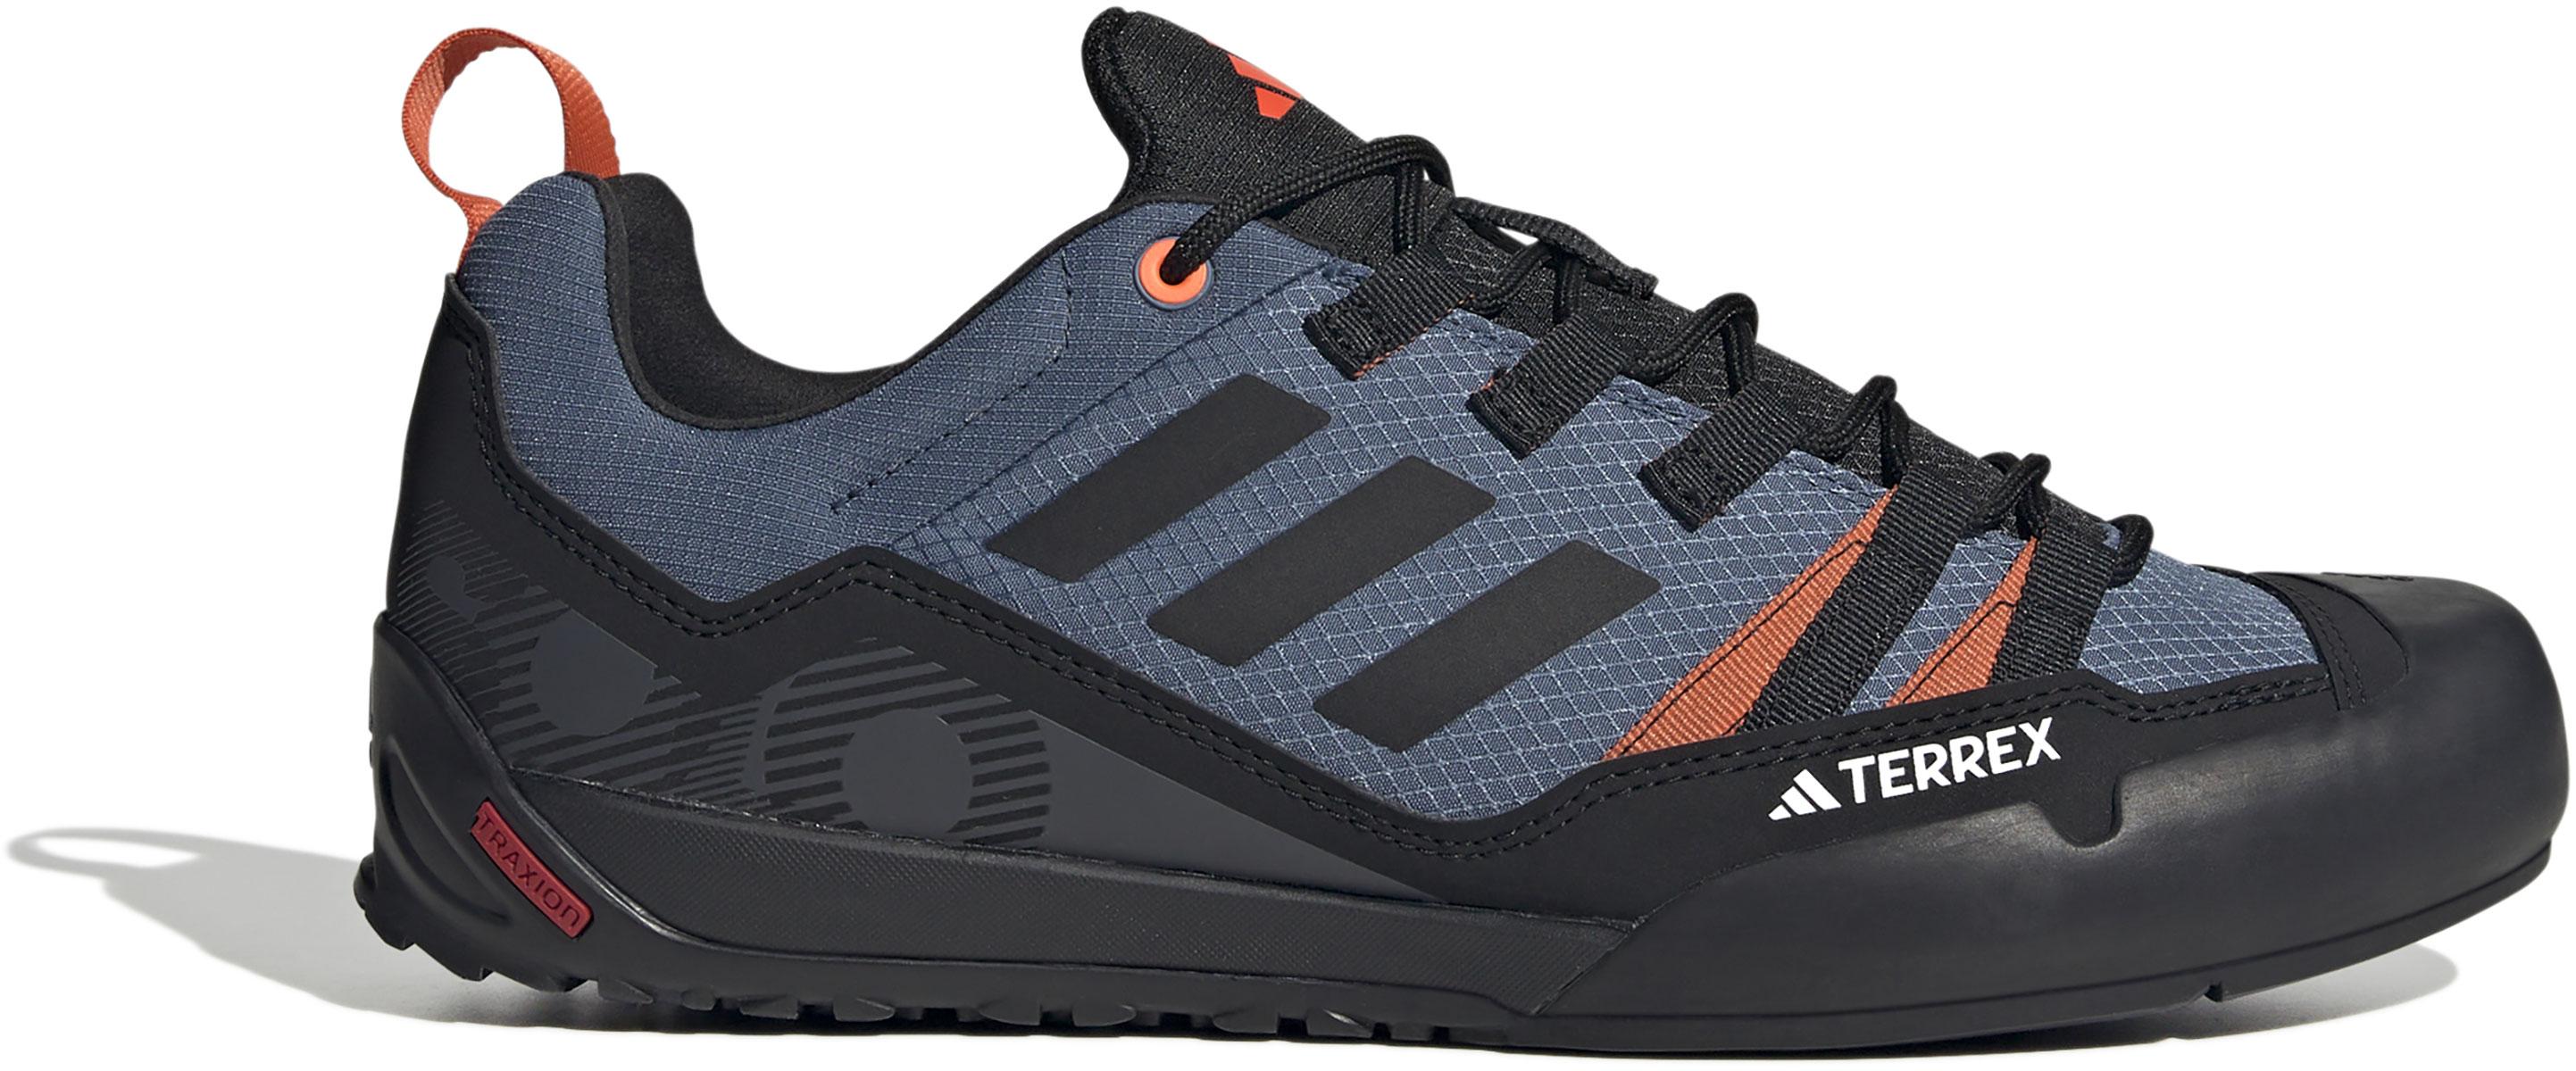 Adidas Terrex Swift Solo Approach Shoes - Wonder Steel/core Black/semi Impact Orange